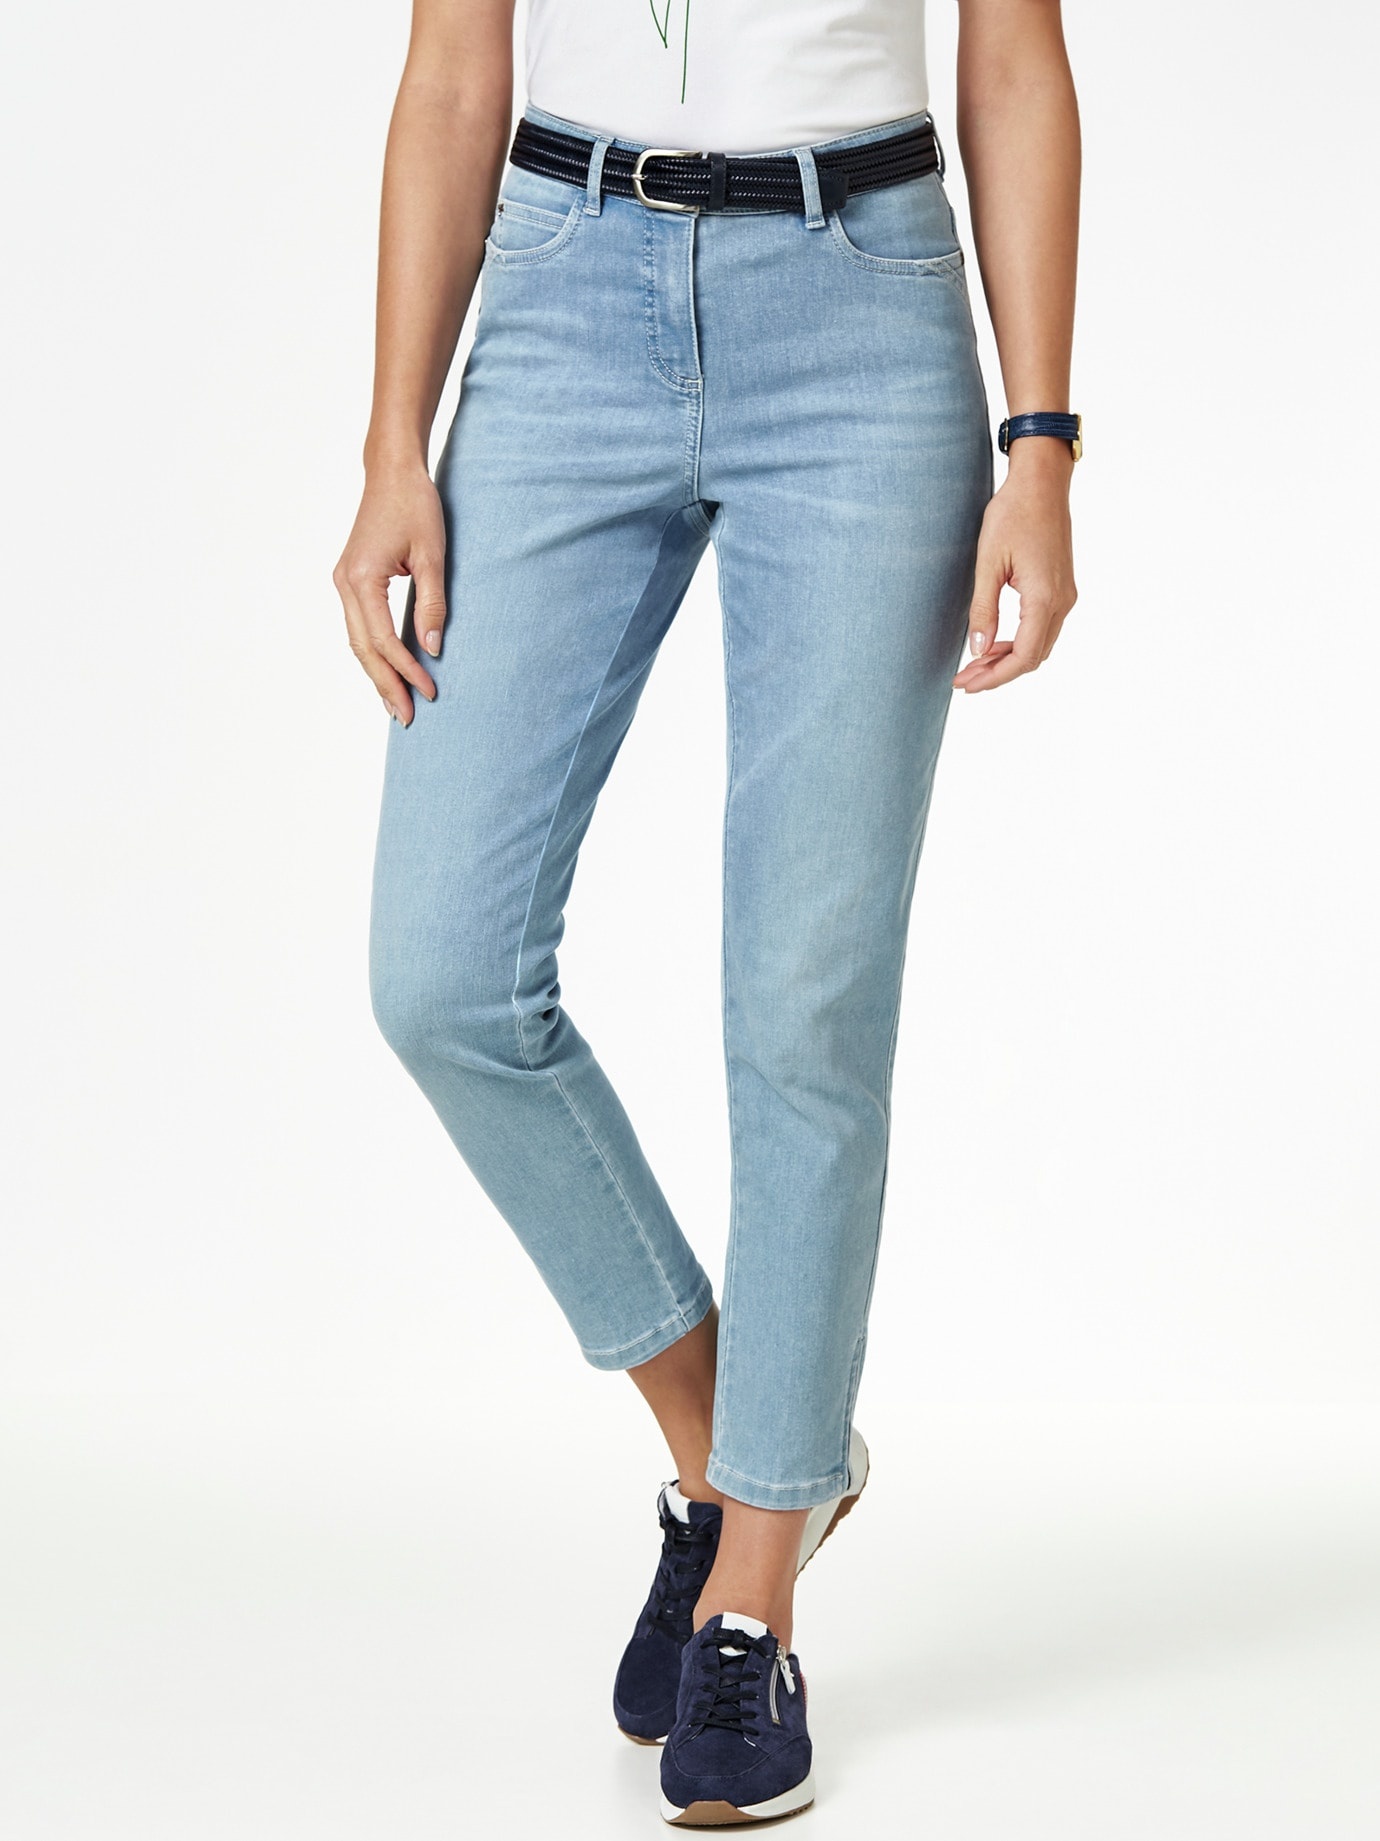 Walbusch Damen 7/8 Jeans Bestform einfarbig Medium Blue 36